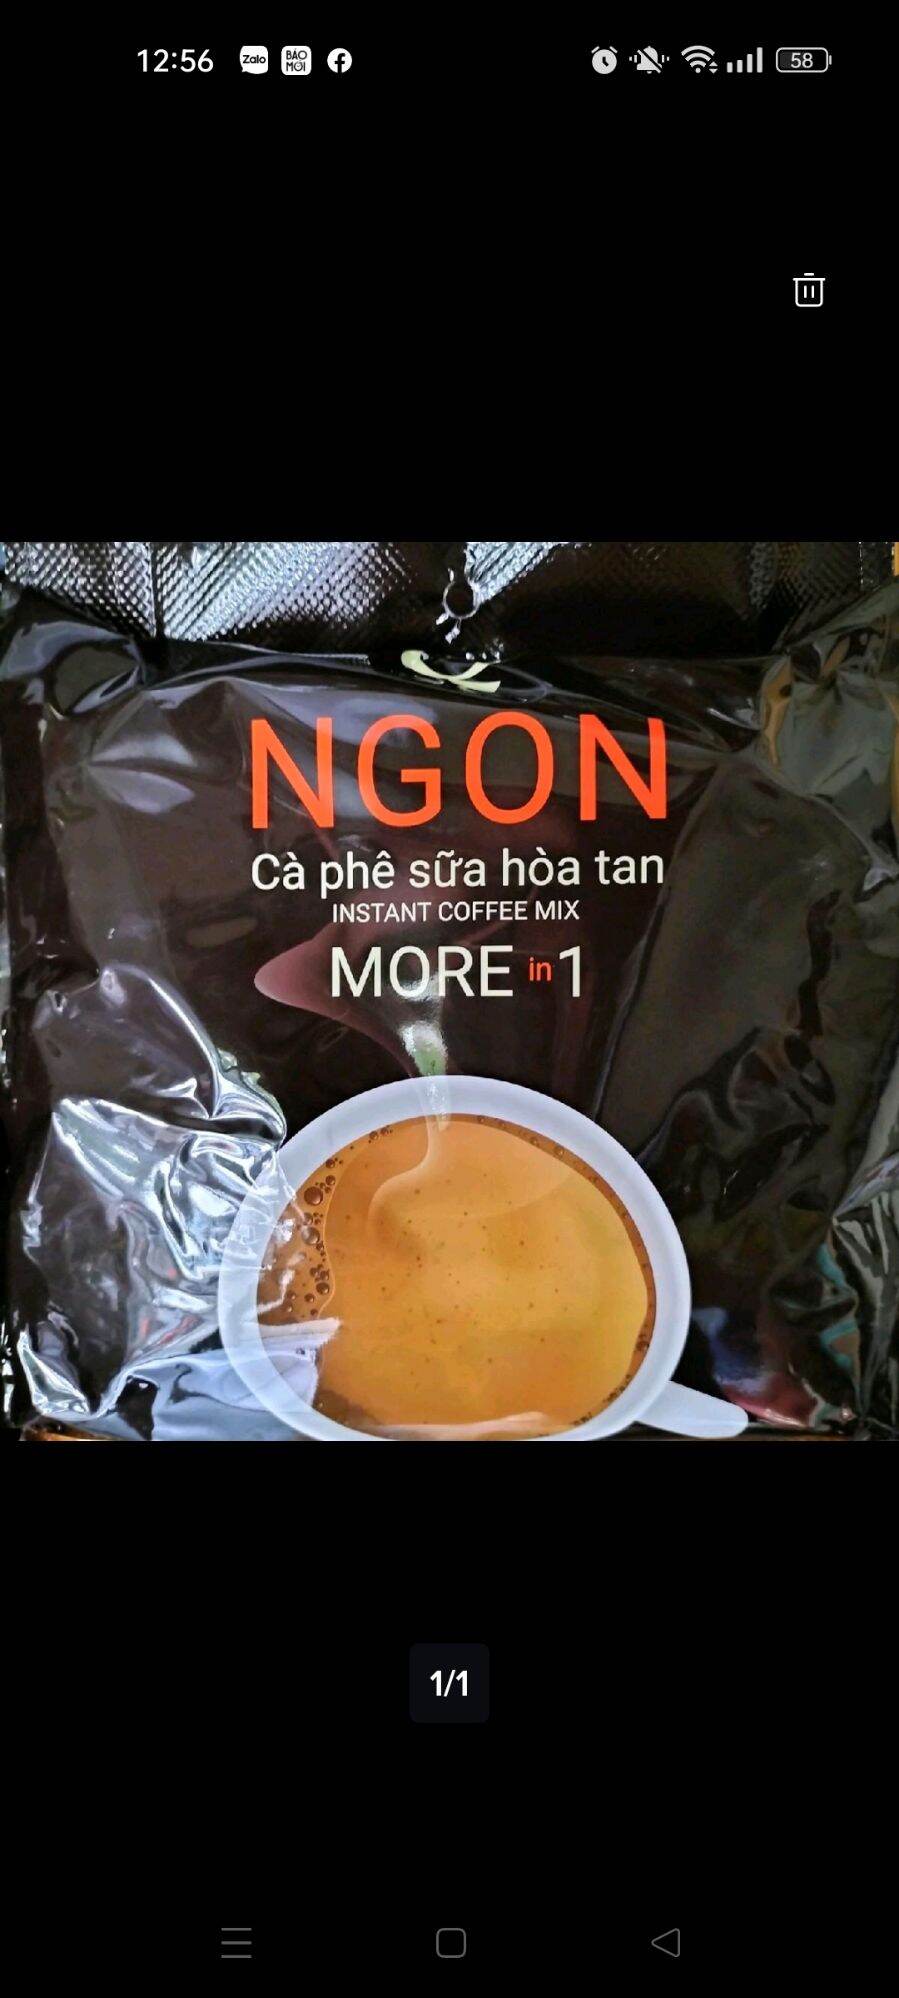 cafe sữa hoà tan Ngon Trần Quang bịch to 52 gói